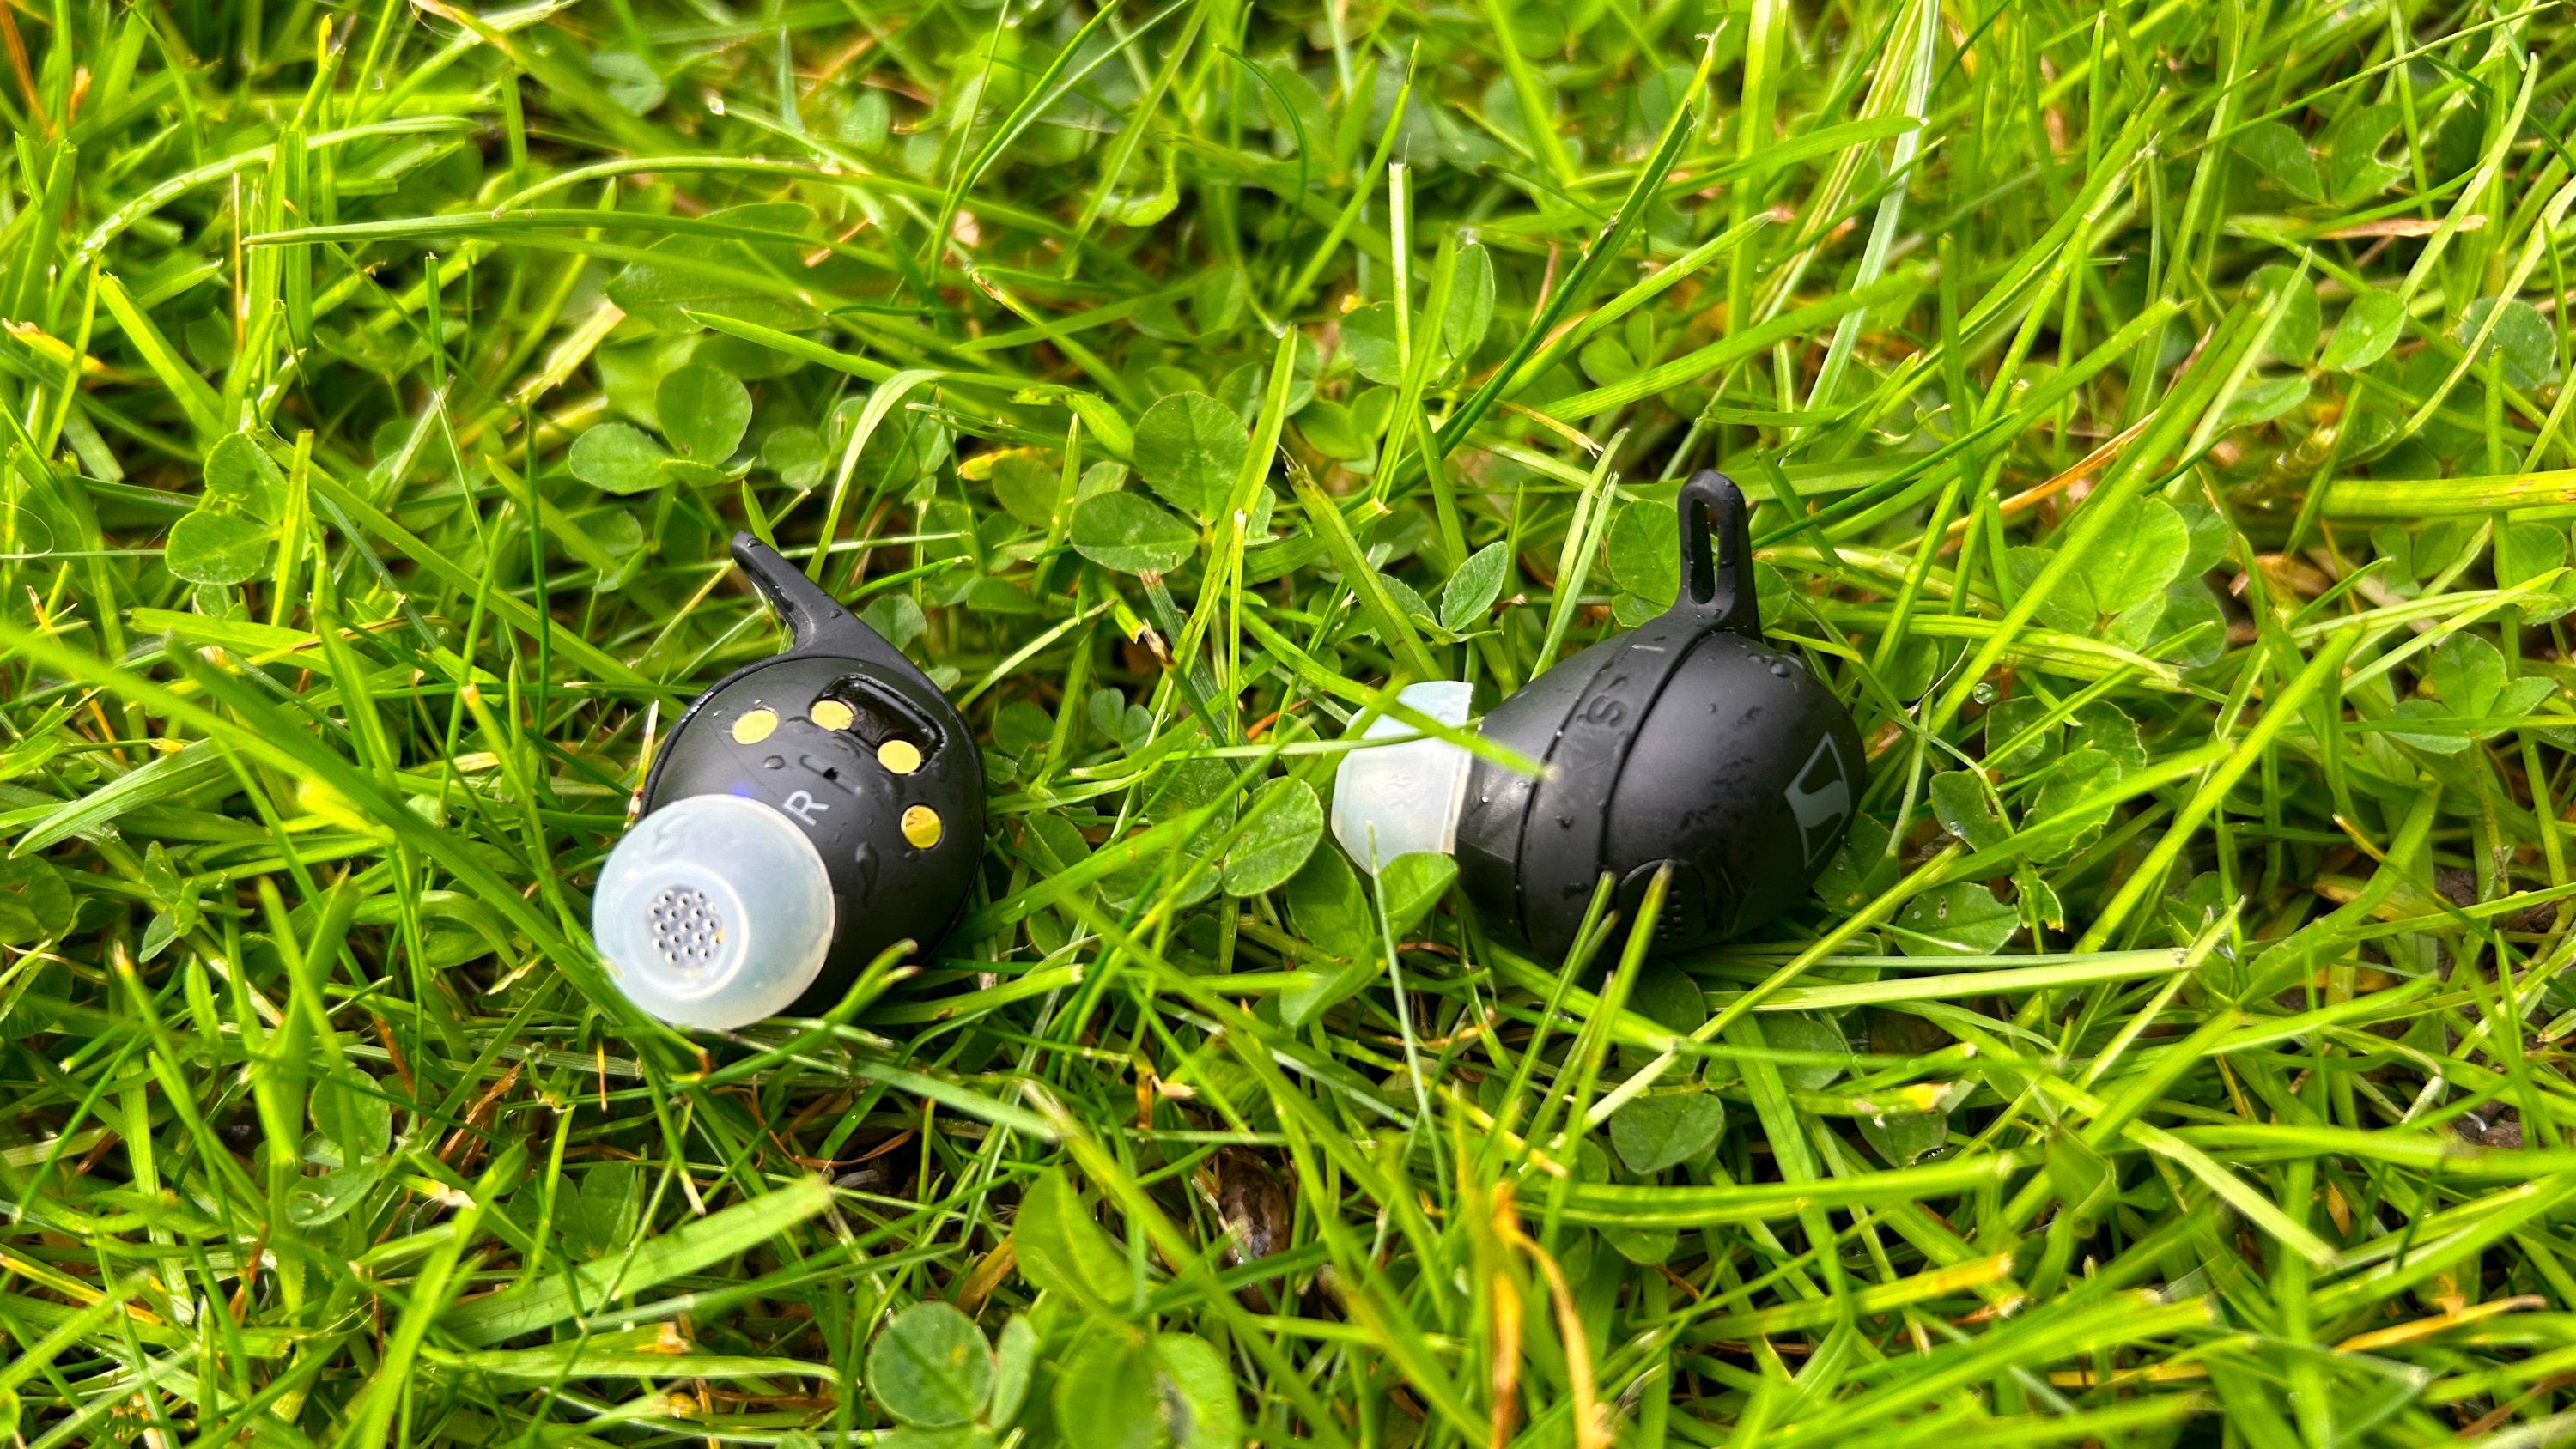 Sennheiser Momentum Sport earbuds in wet grass